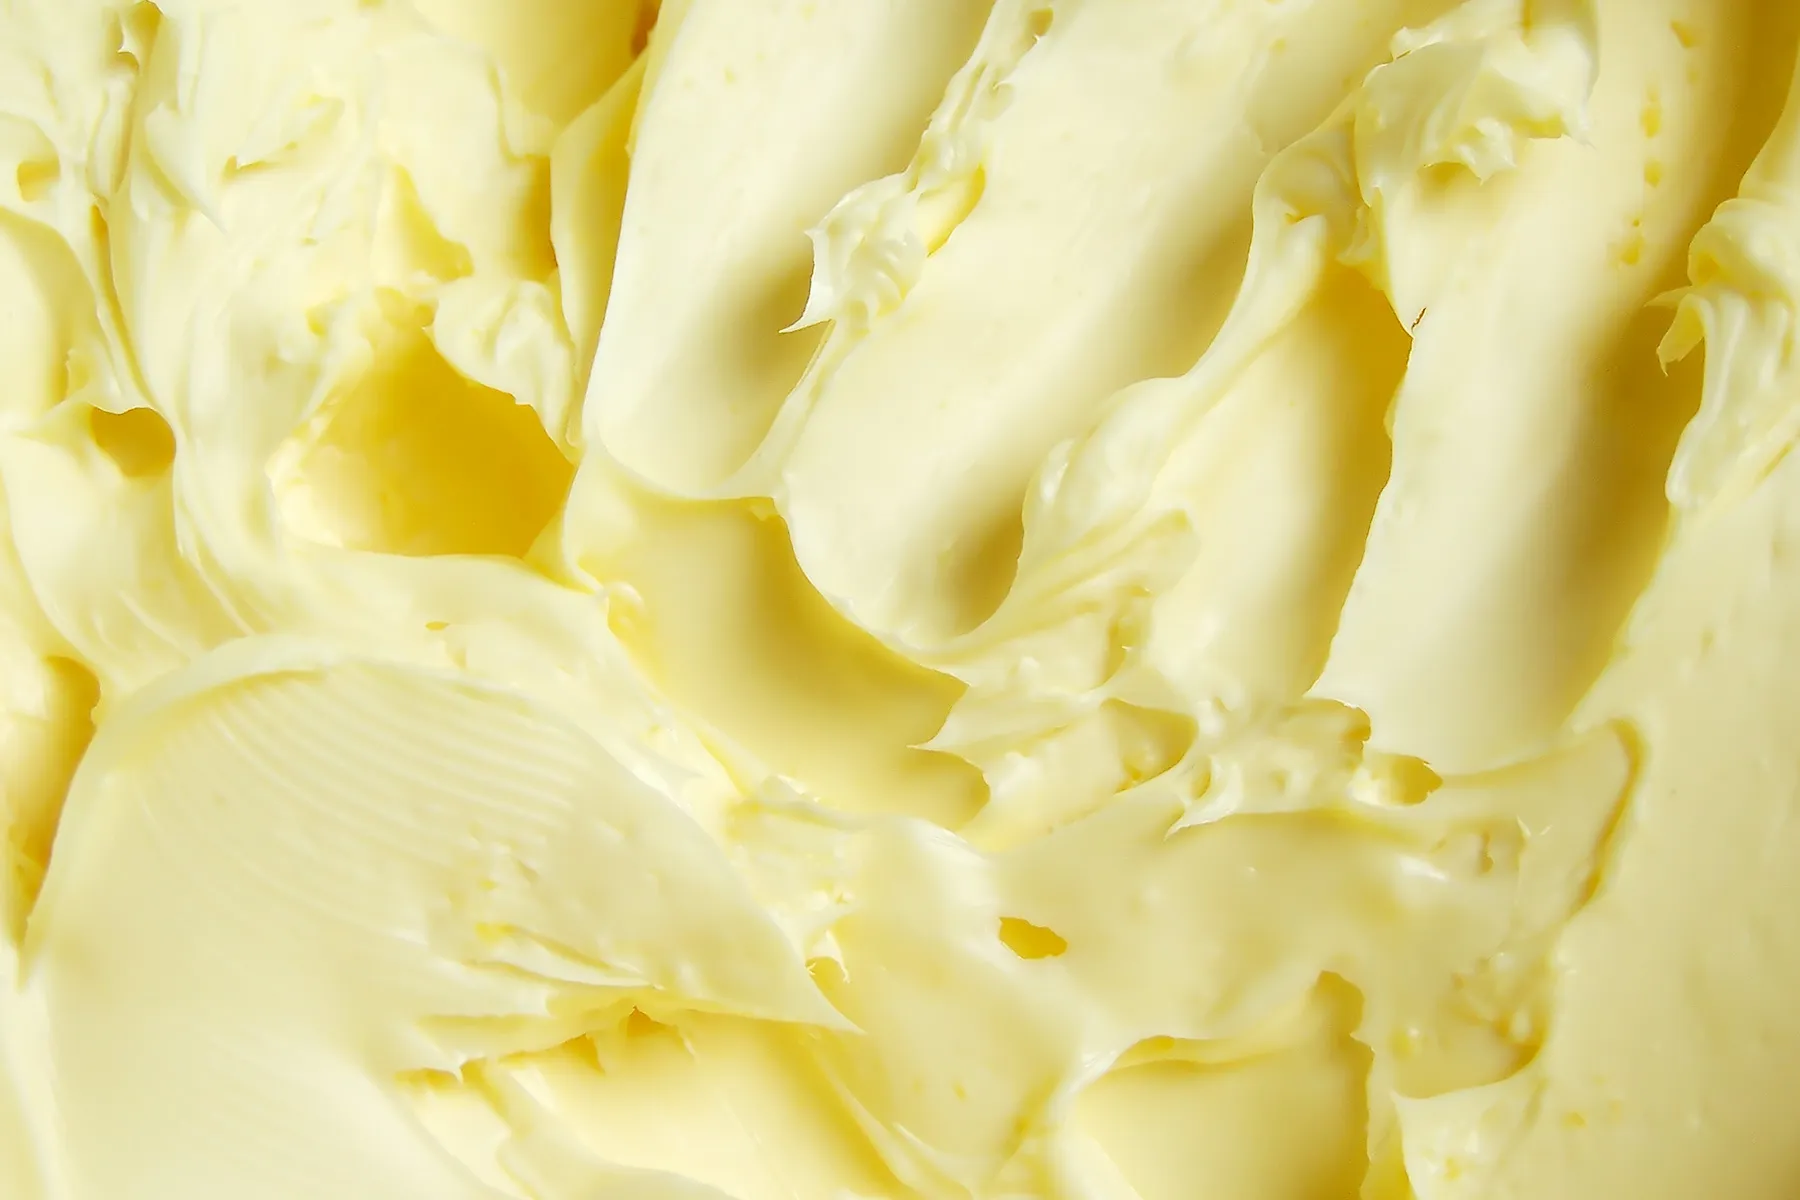 photo of margarine